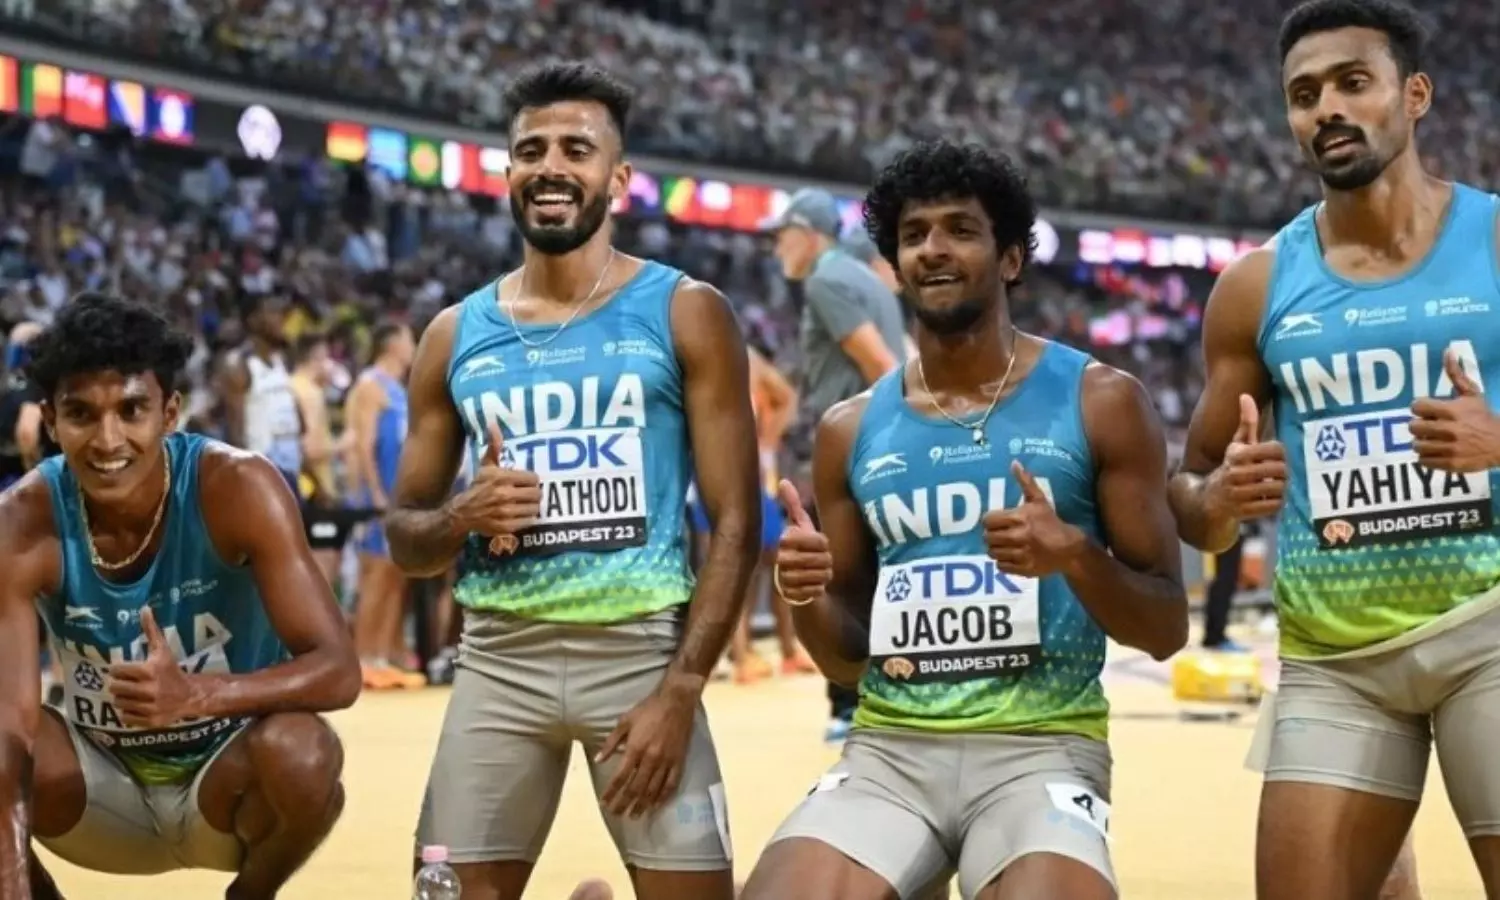 Indian men's relay team